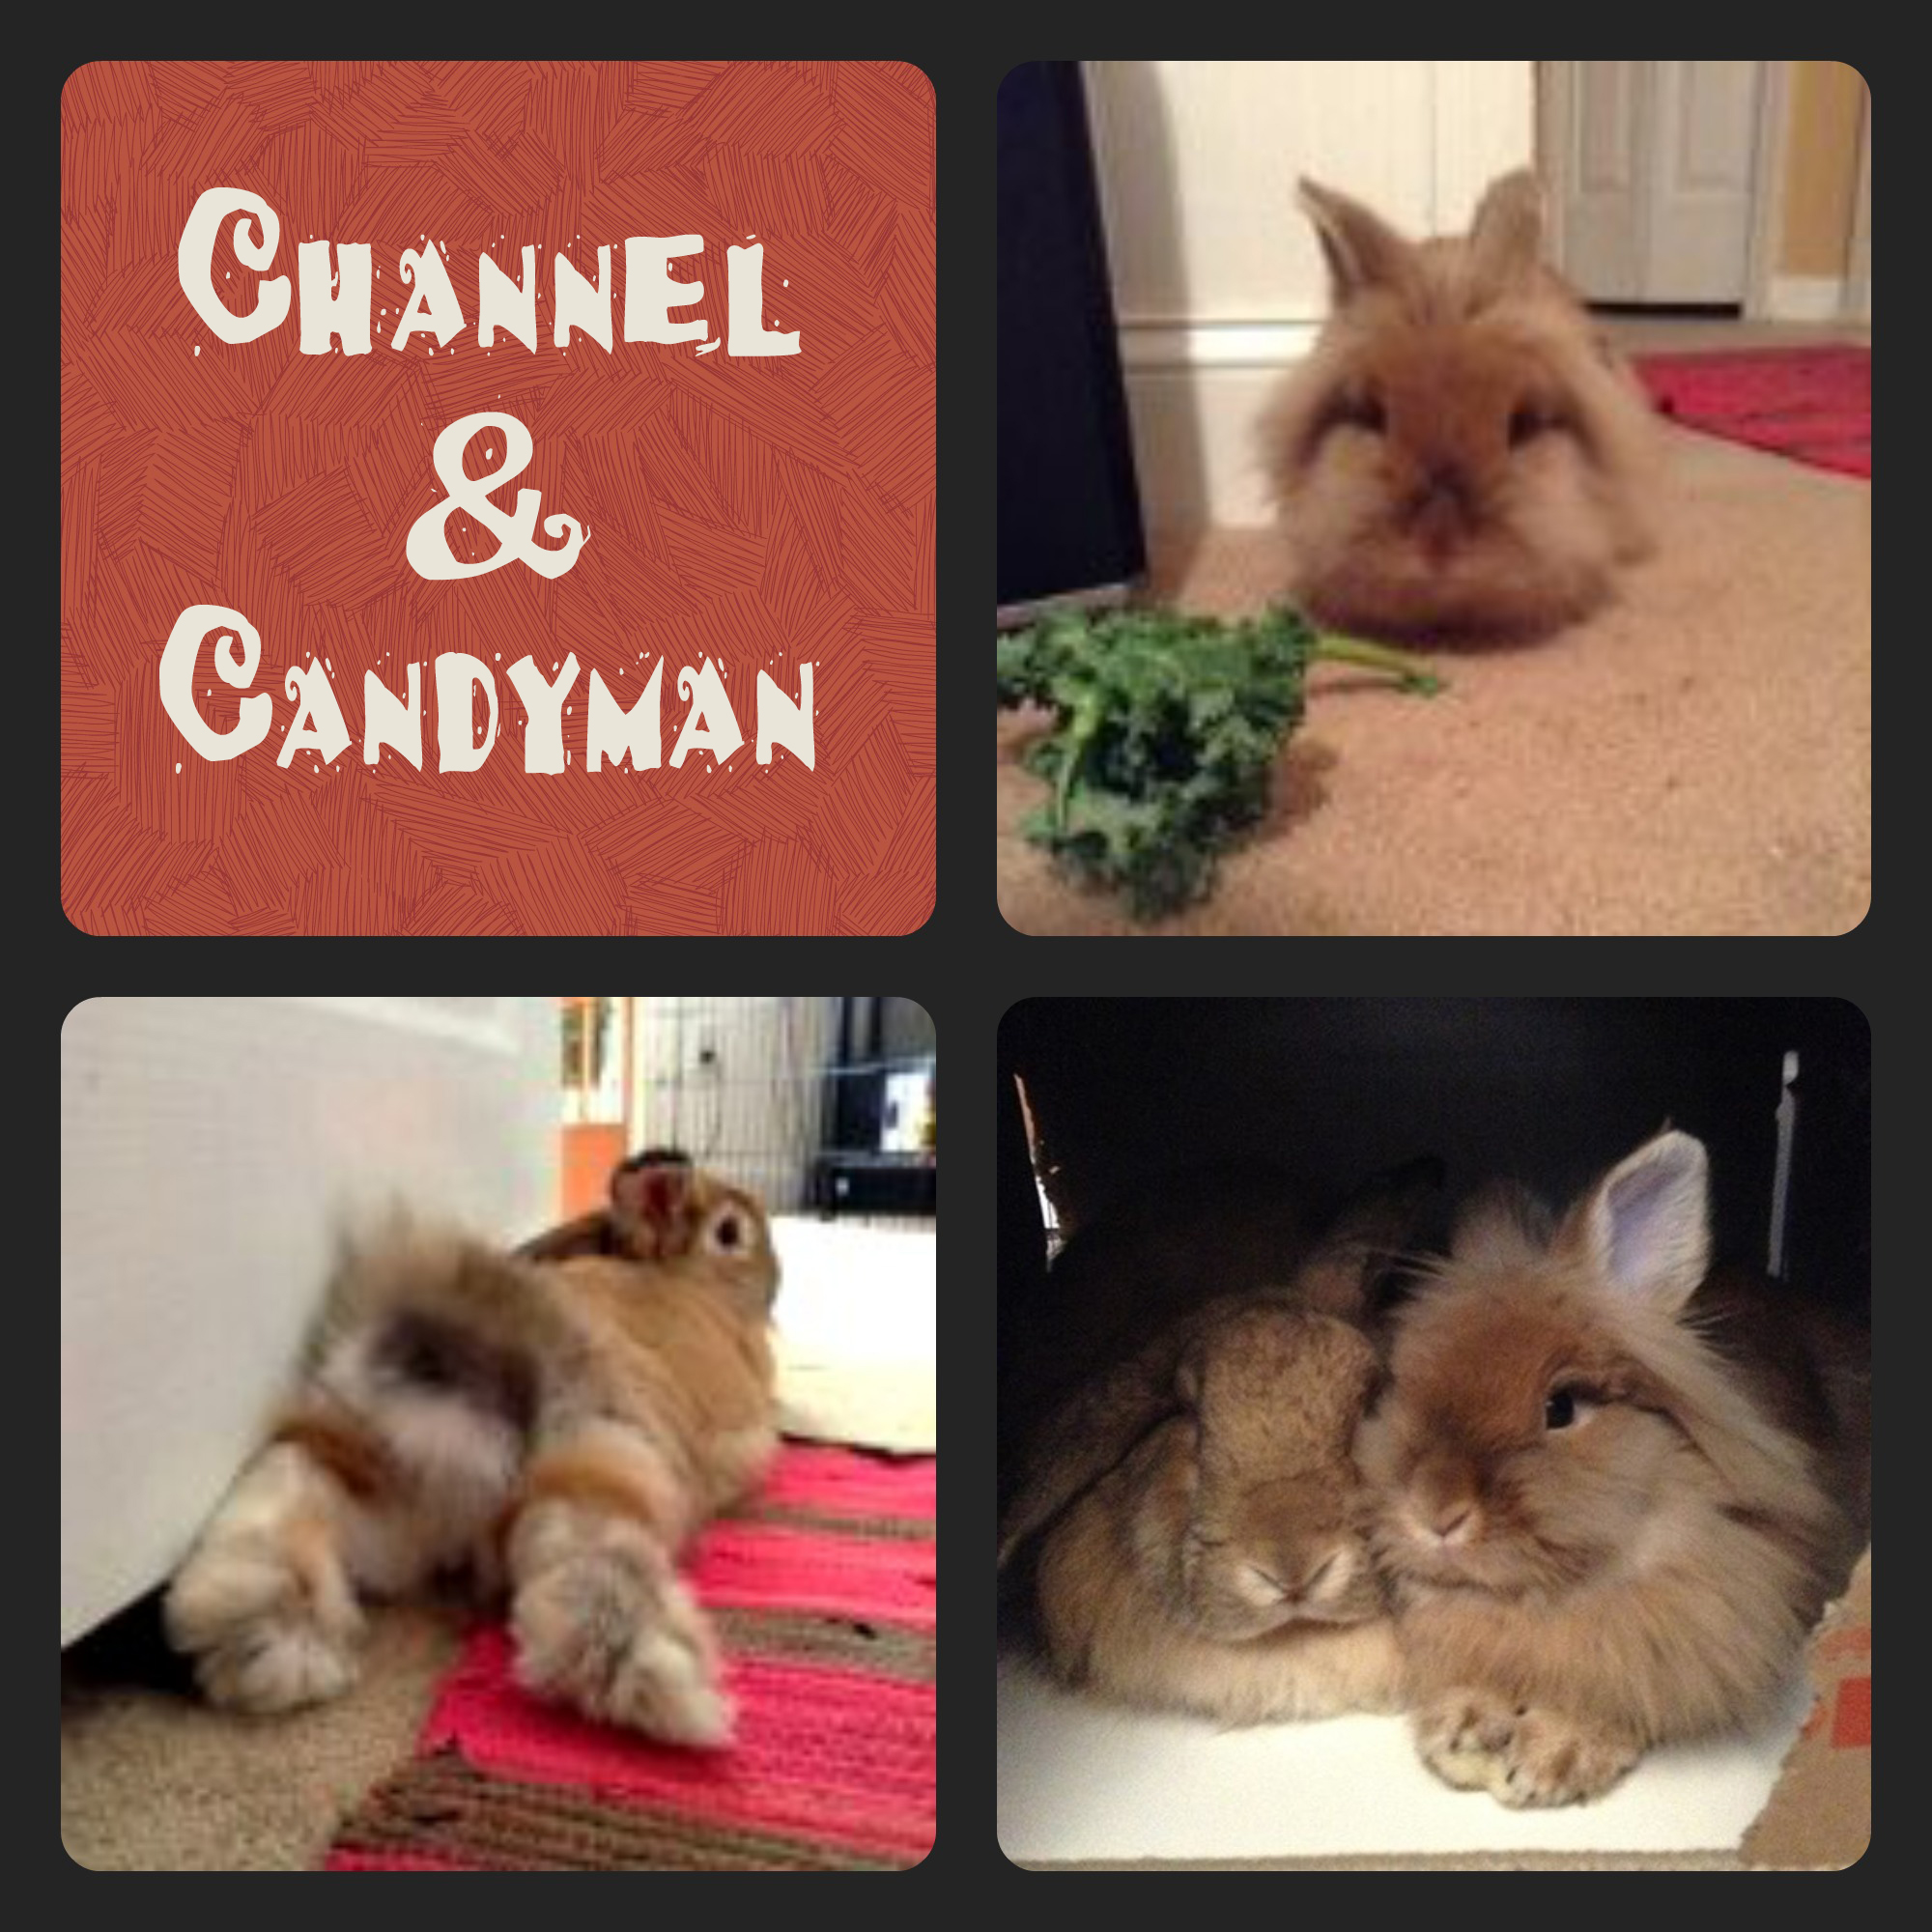 Channel & Candyman